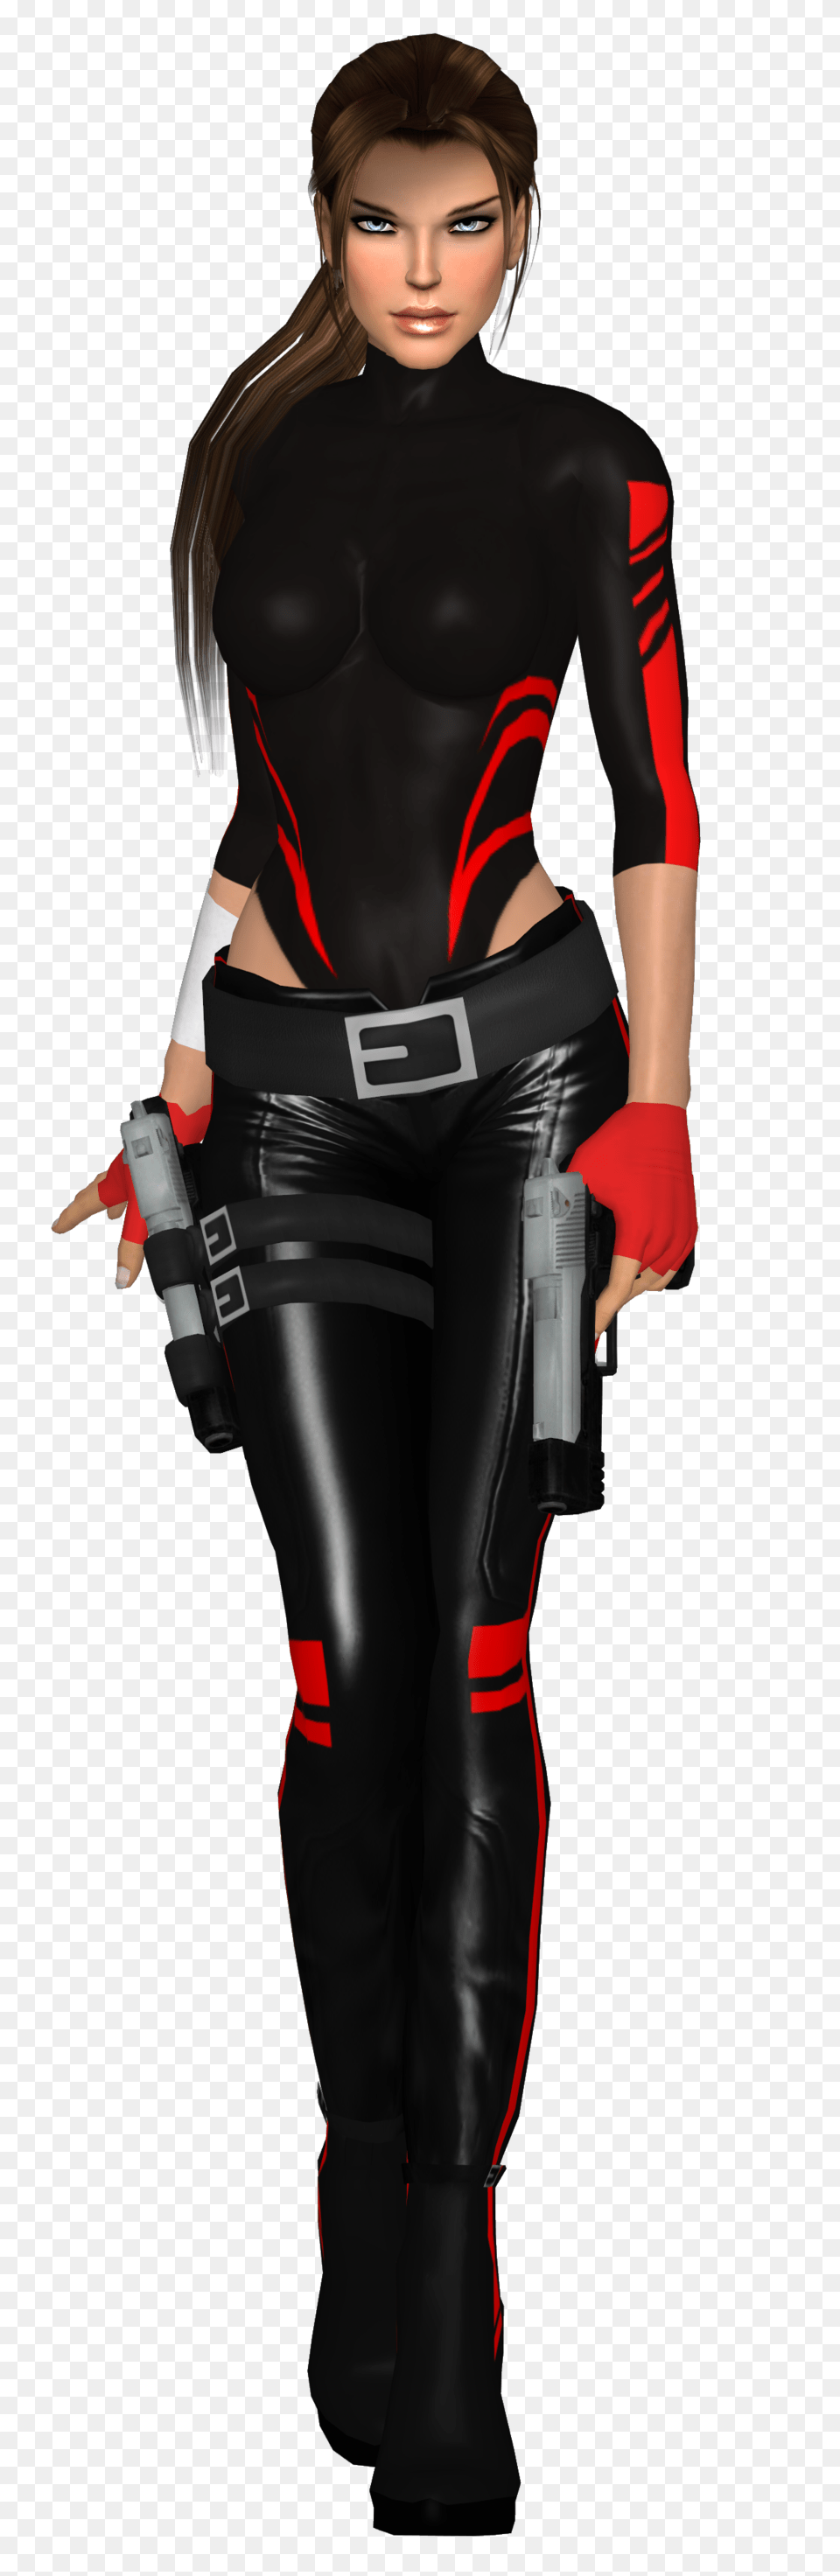 Lara Croft, Clothing, Costume, Spandex, Sleeve Png Image